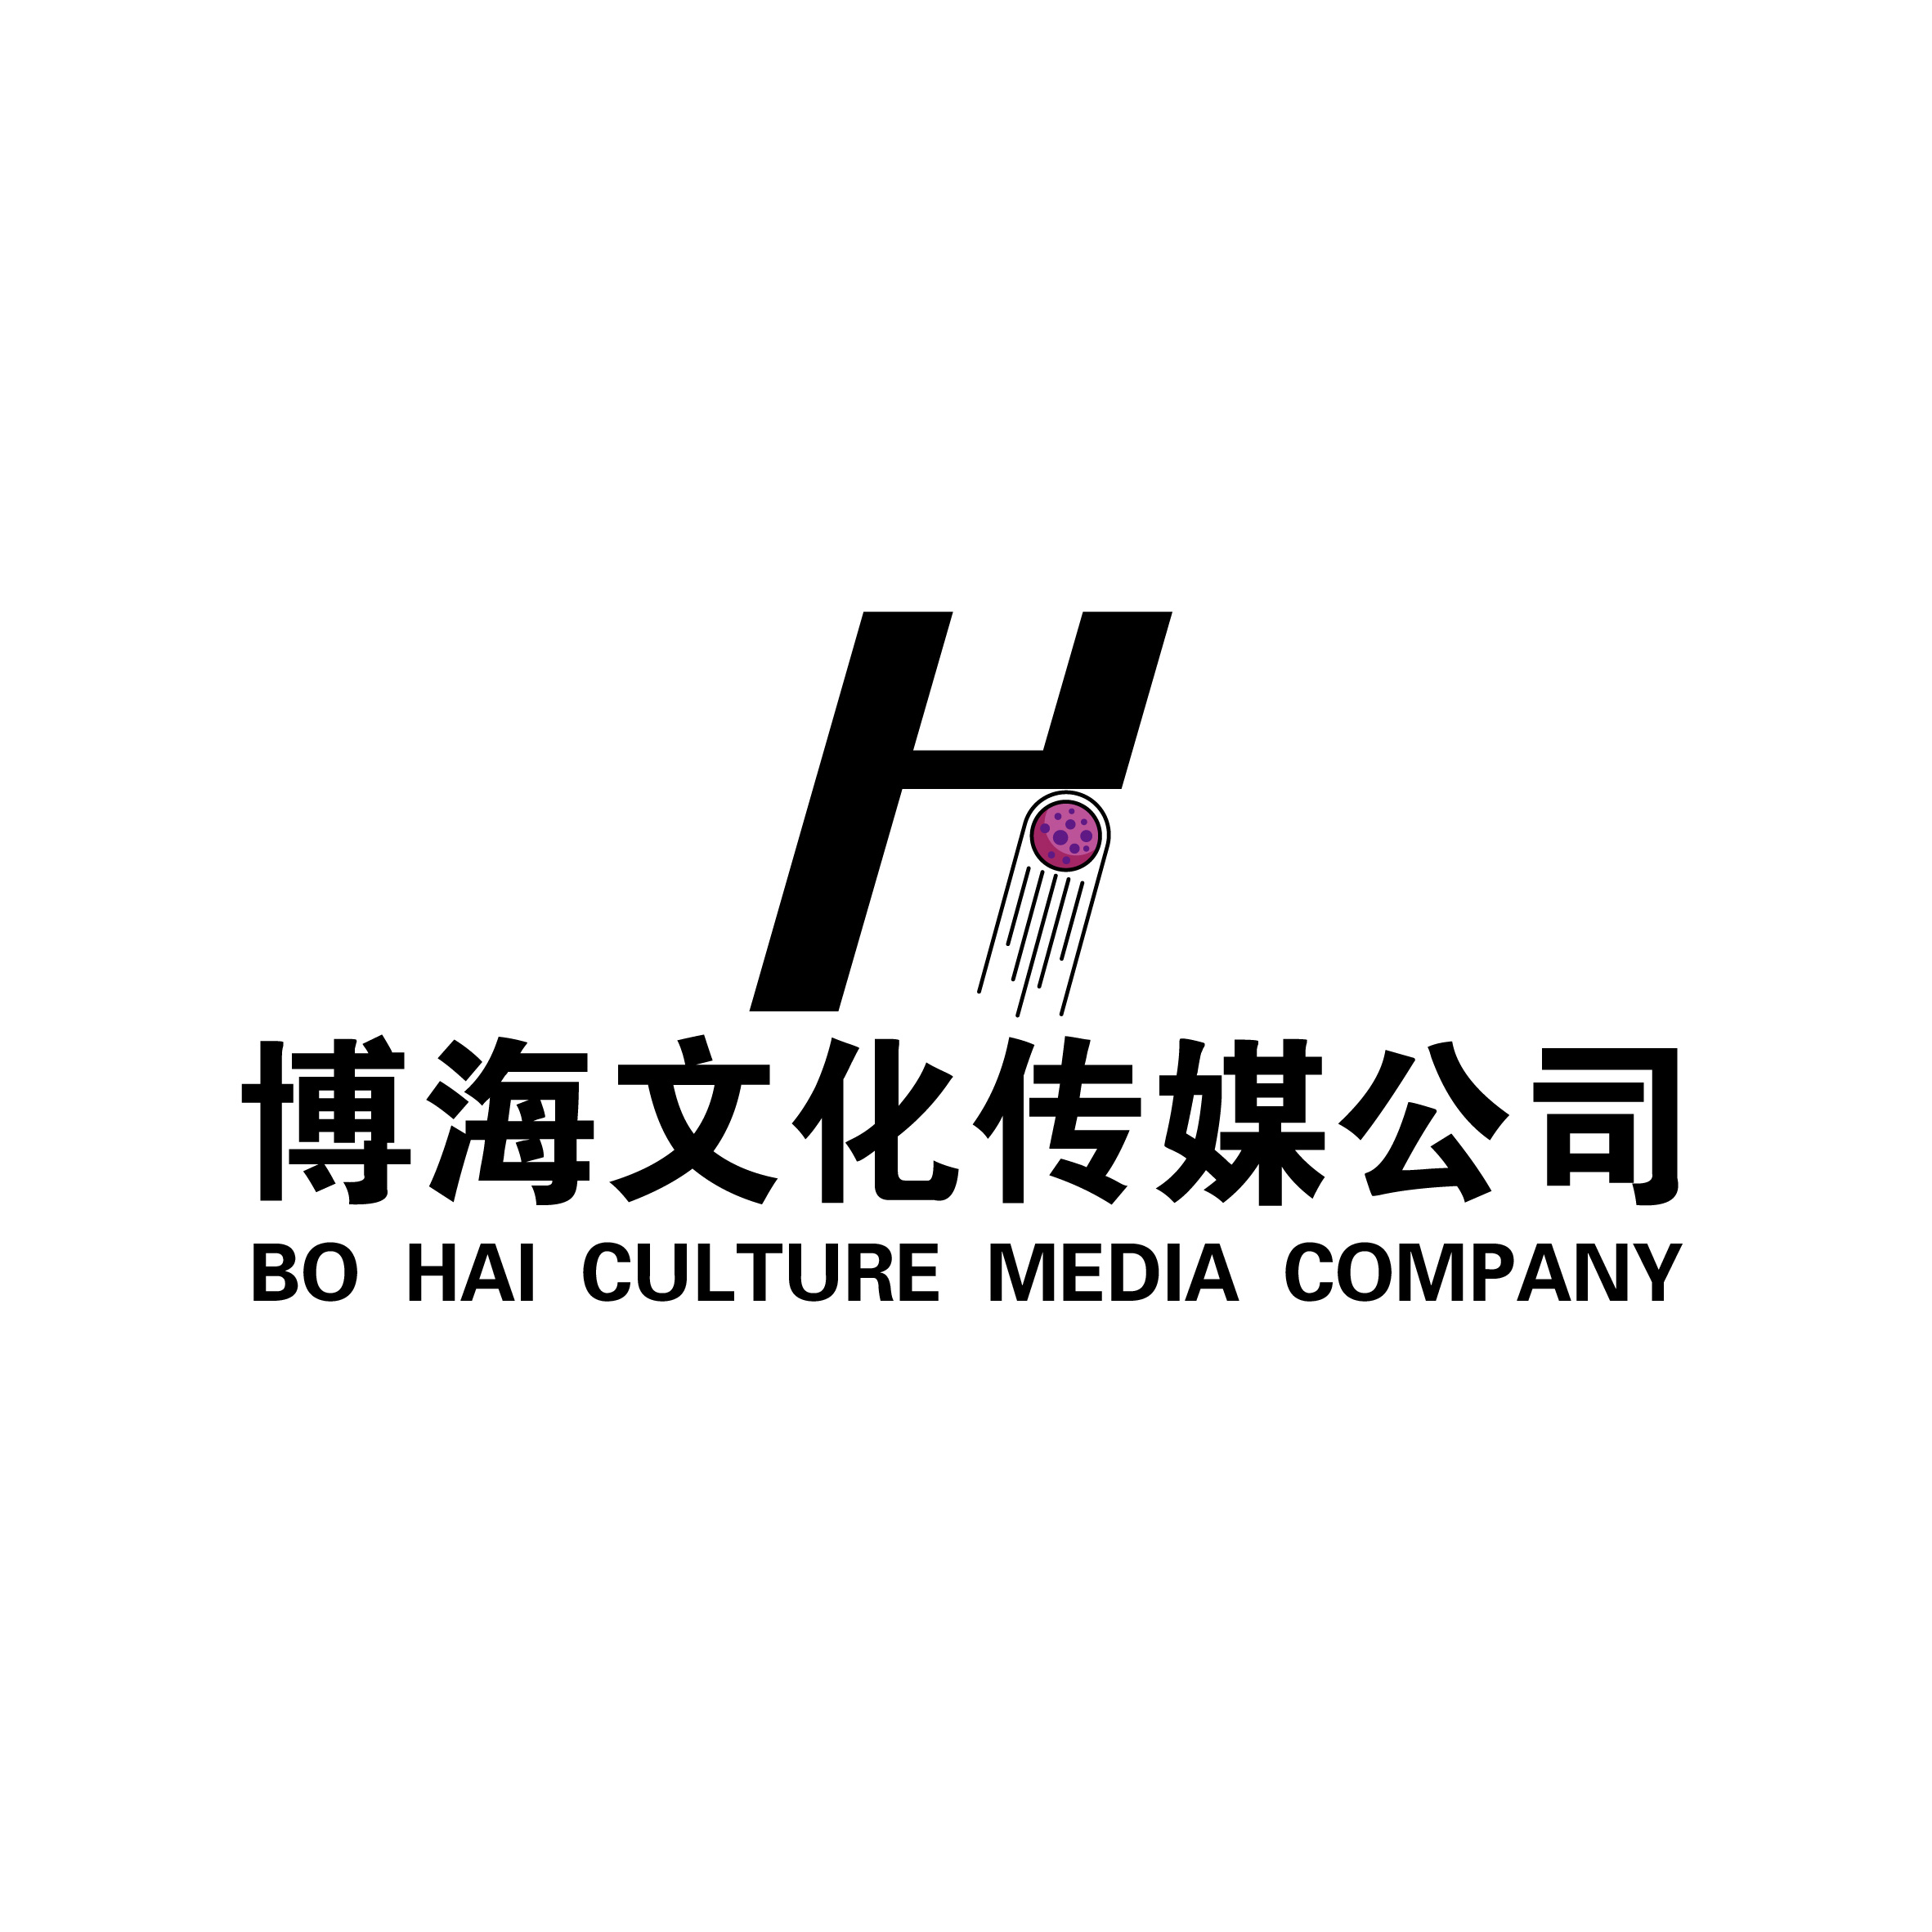 个人媒体公司logo——《博海文化传媒公司logo》